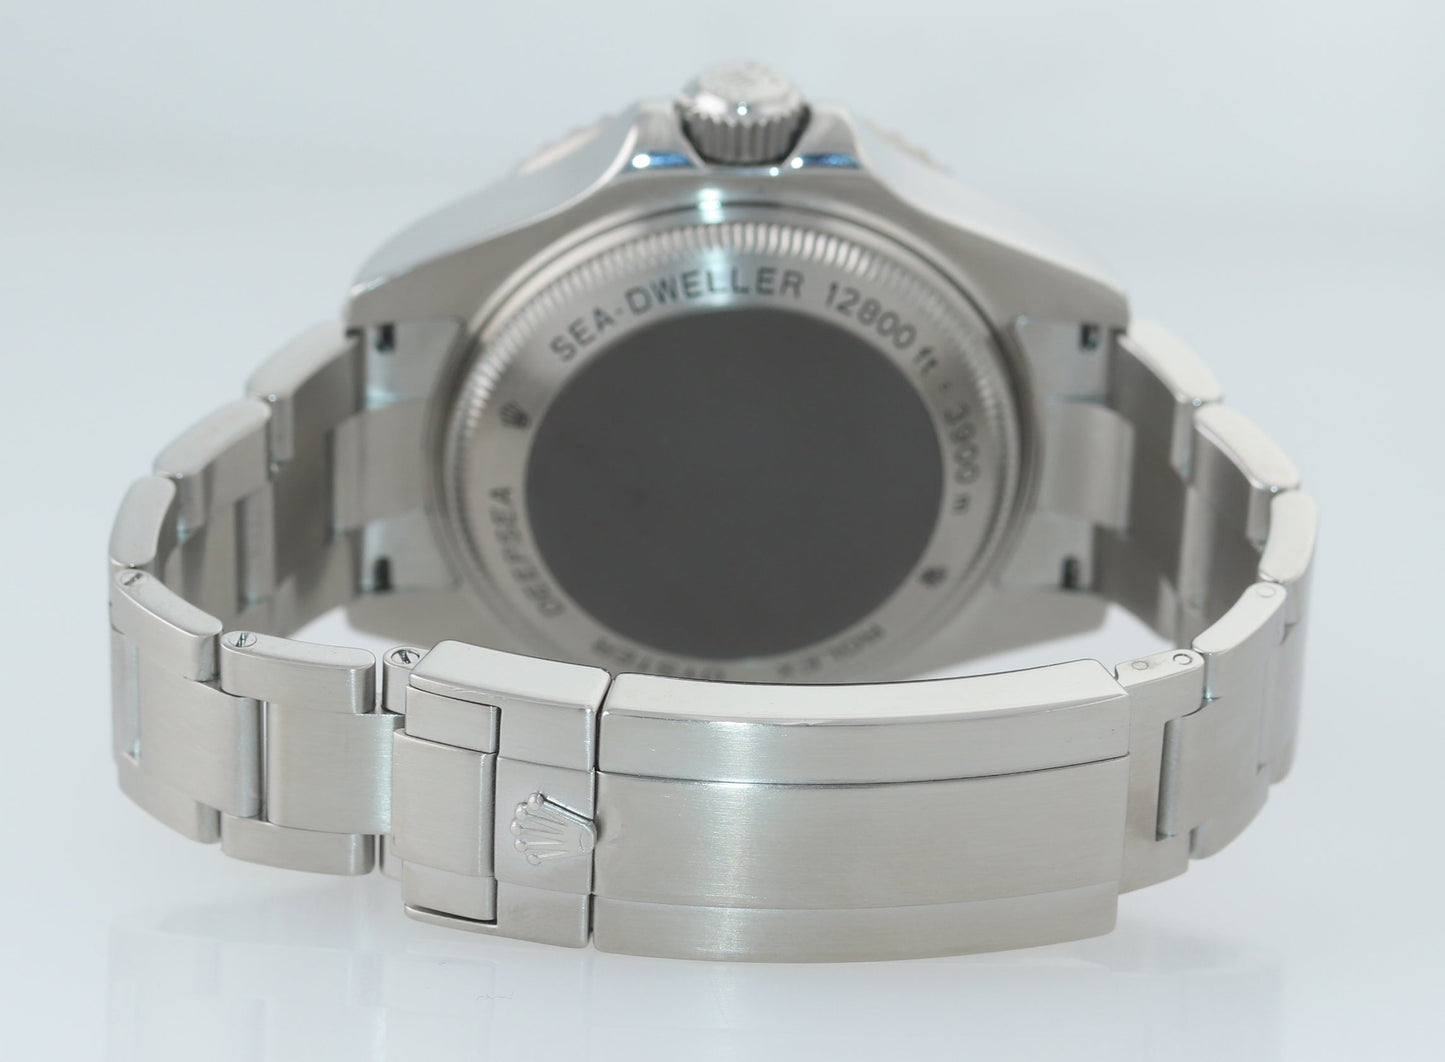 MINT 2019 PAPERS Rolex Sea-Dweller DEEPSEA 116660 Steel 44mm Black Watch Box